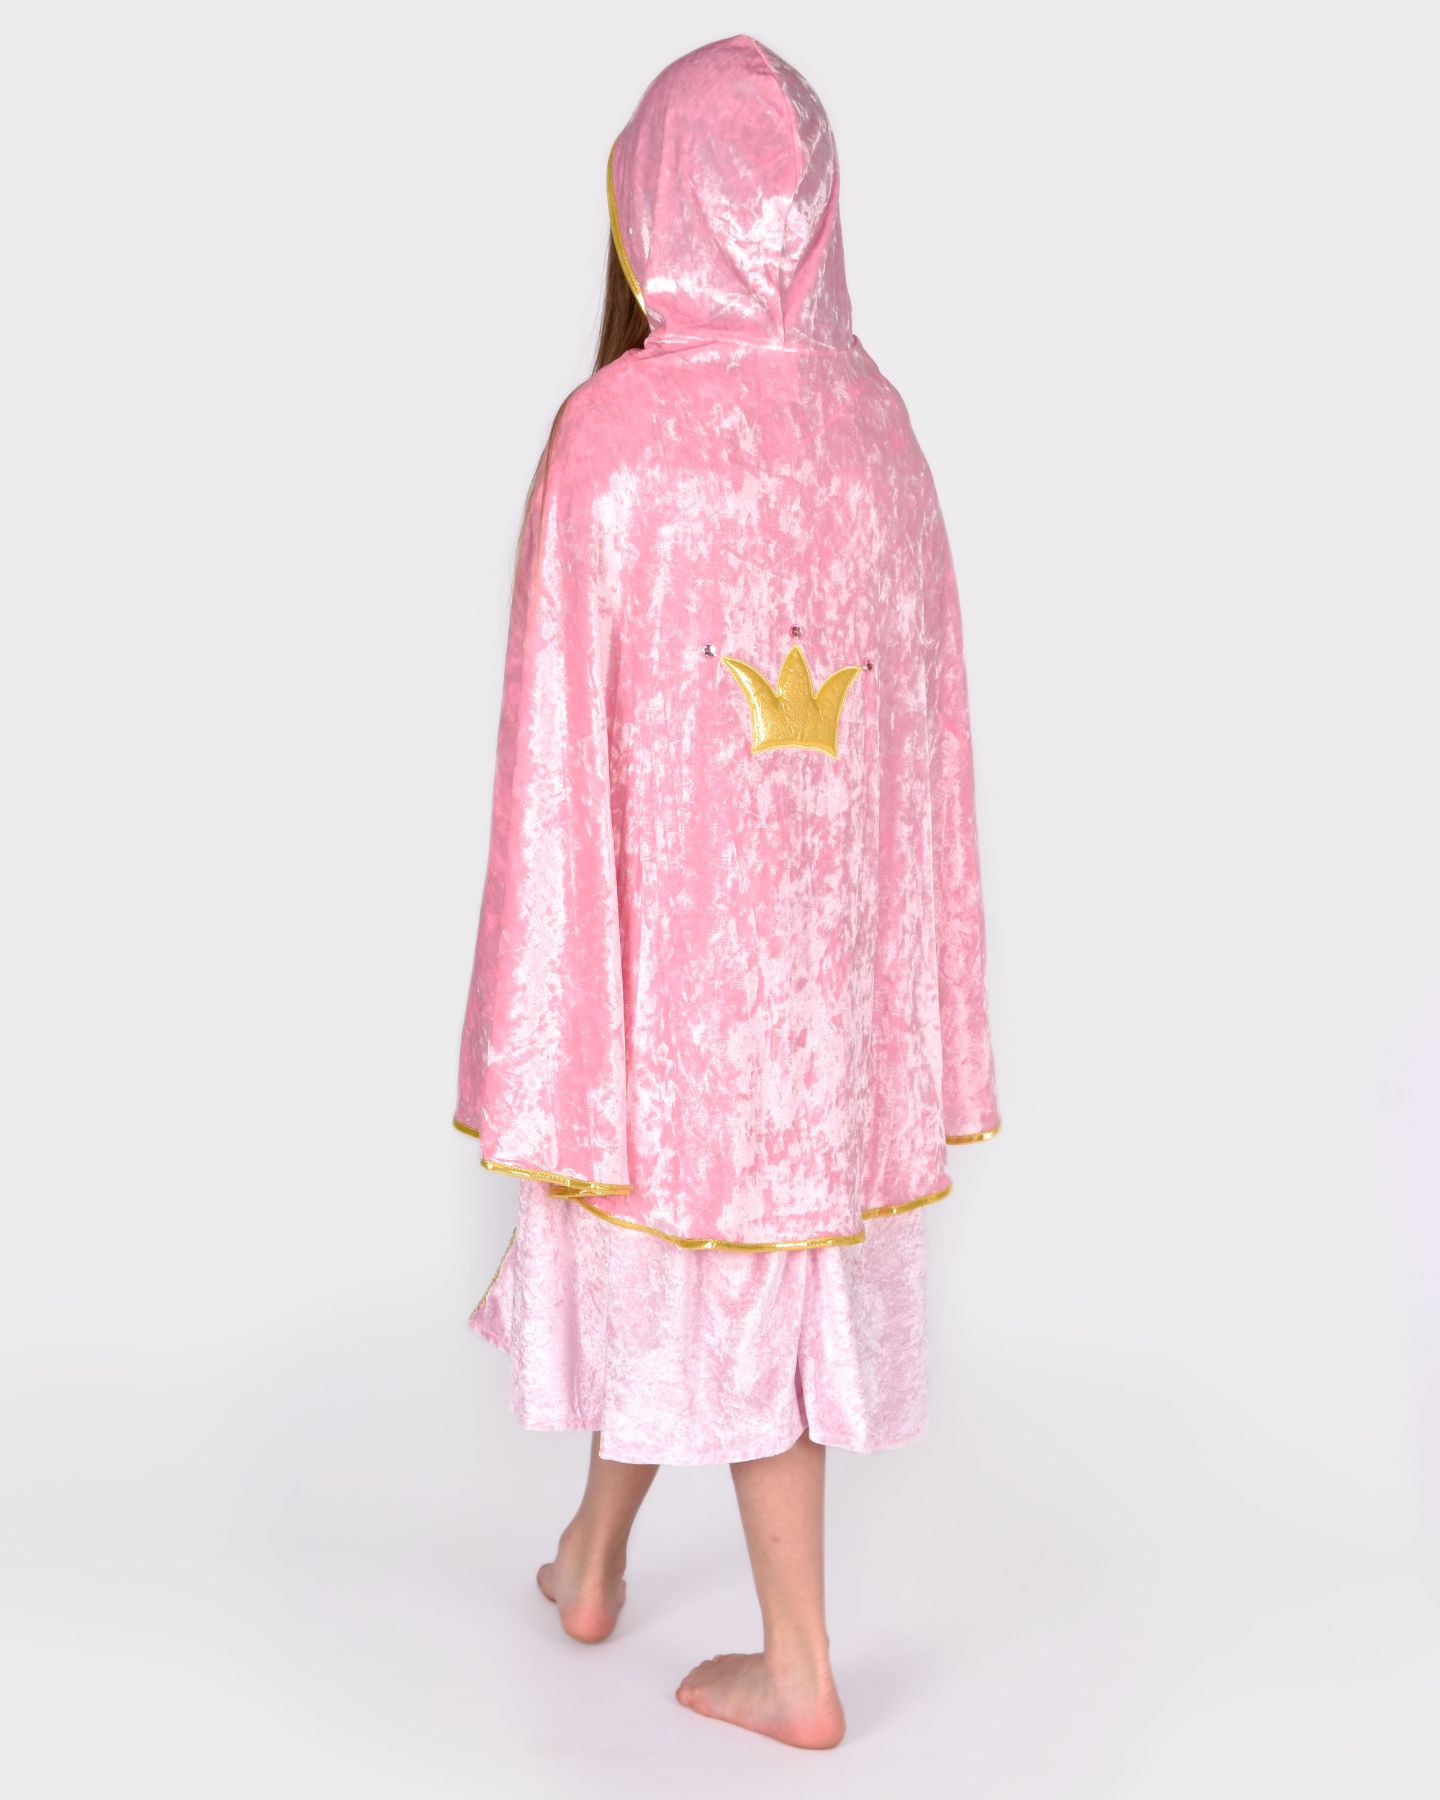 Flicka som bär en prinsesscape i rosa krossad sammet med gulddetaljer visas bakifrån. På capens rygg syns en guldig krona. Capen har en huva.